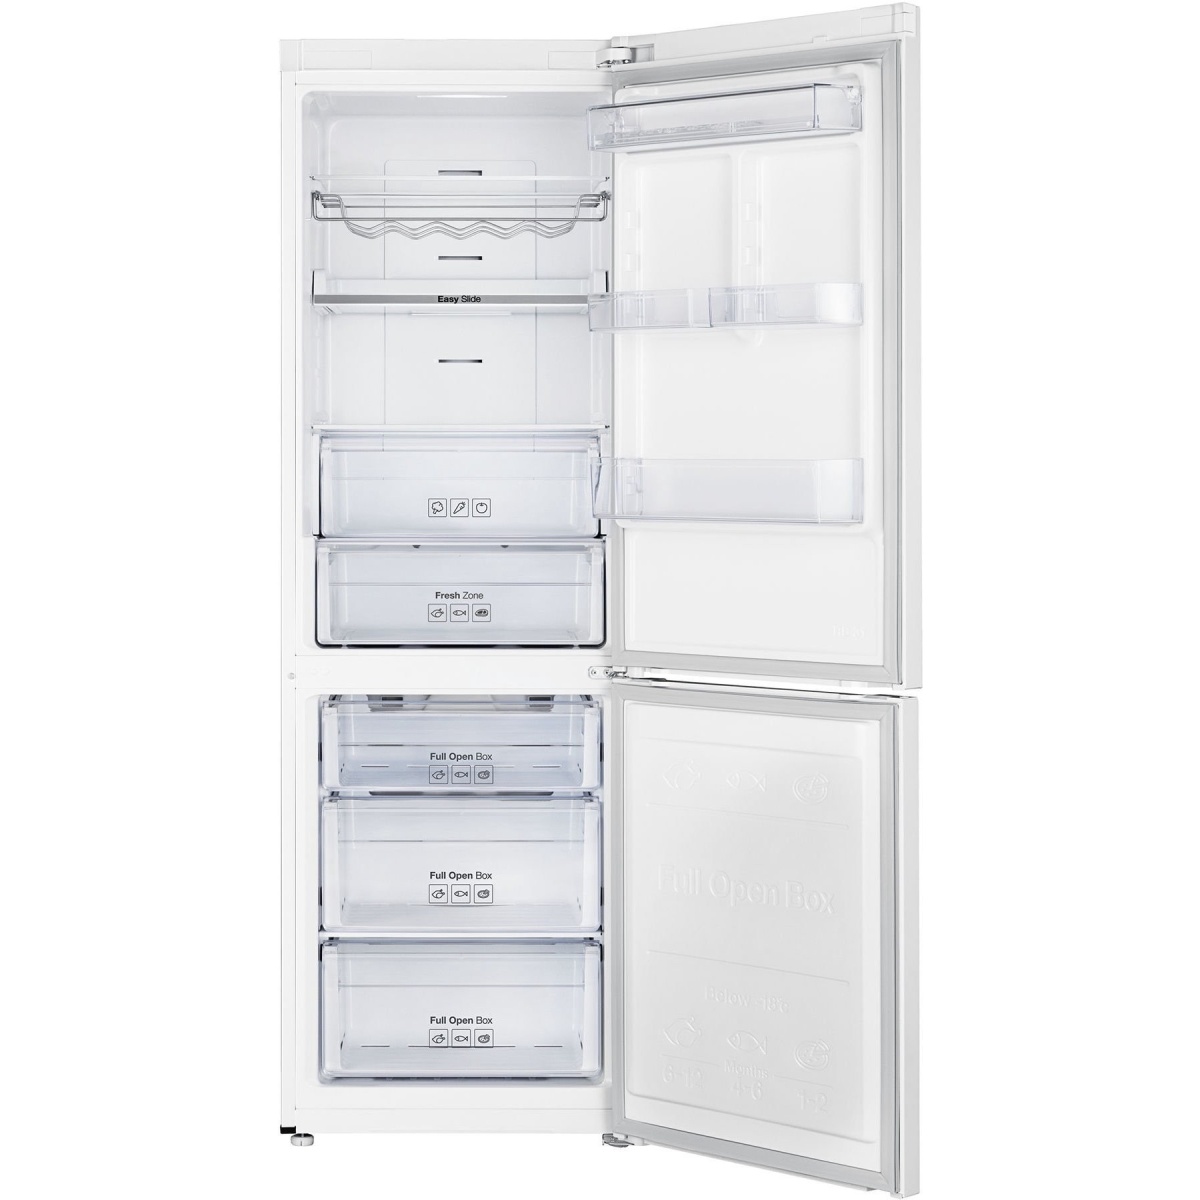 Холодильник Samsung RB33J3215WW (Объем - 328 л / Высота - 185 см / A+ / Белый / NoFrost / All Around Cooling / Digital Inverter)